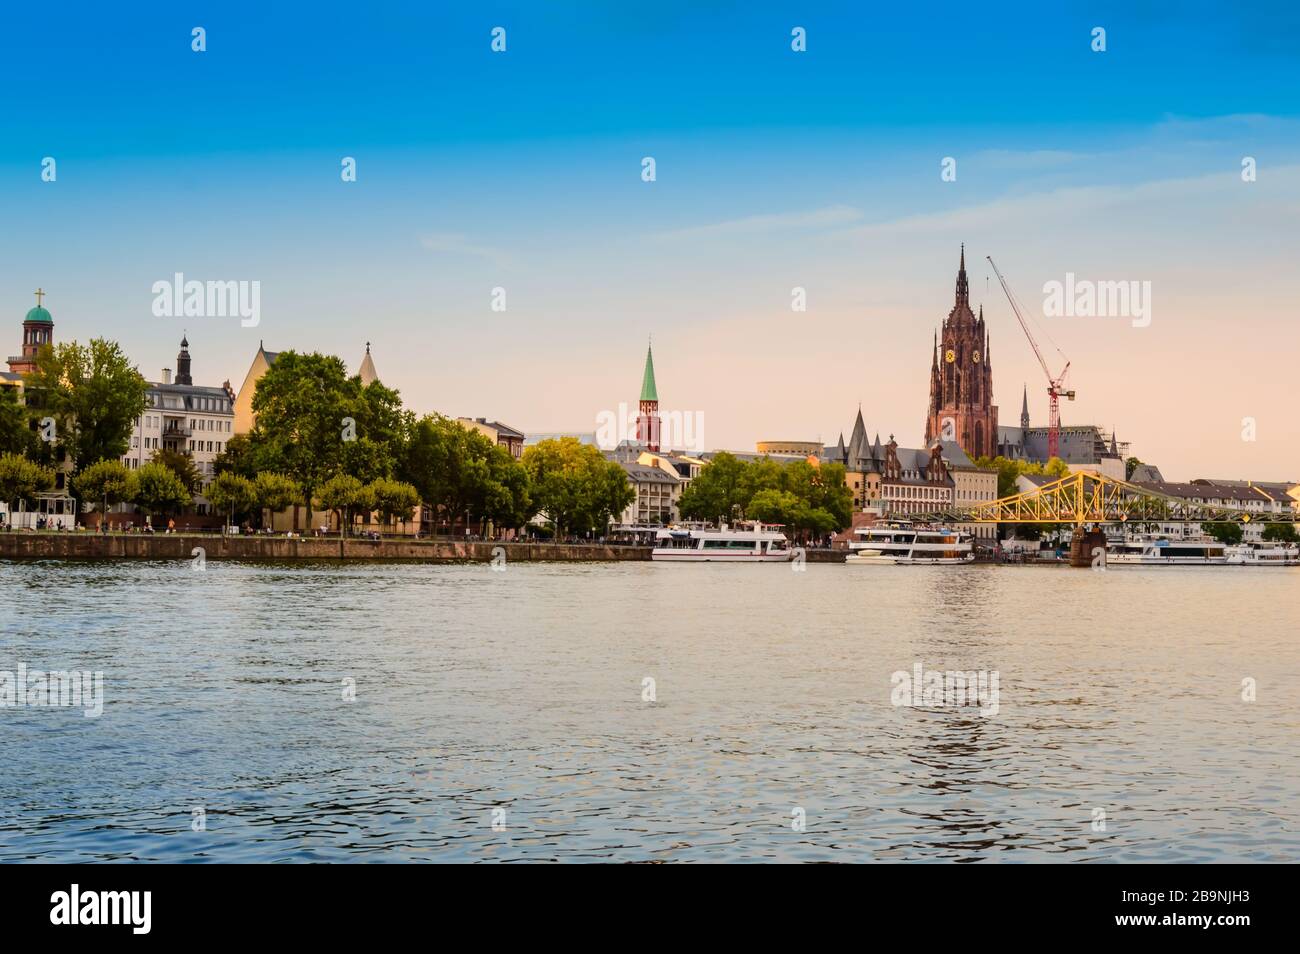 Historische Altstadt von Frankfurt am Main. Hafengebiet mit gotischer Kathedrale St. Bartholomäus, Promenade, Touristenbooten und Eiserner Steg i Stockfoto